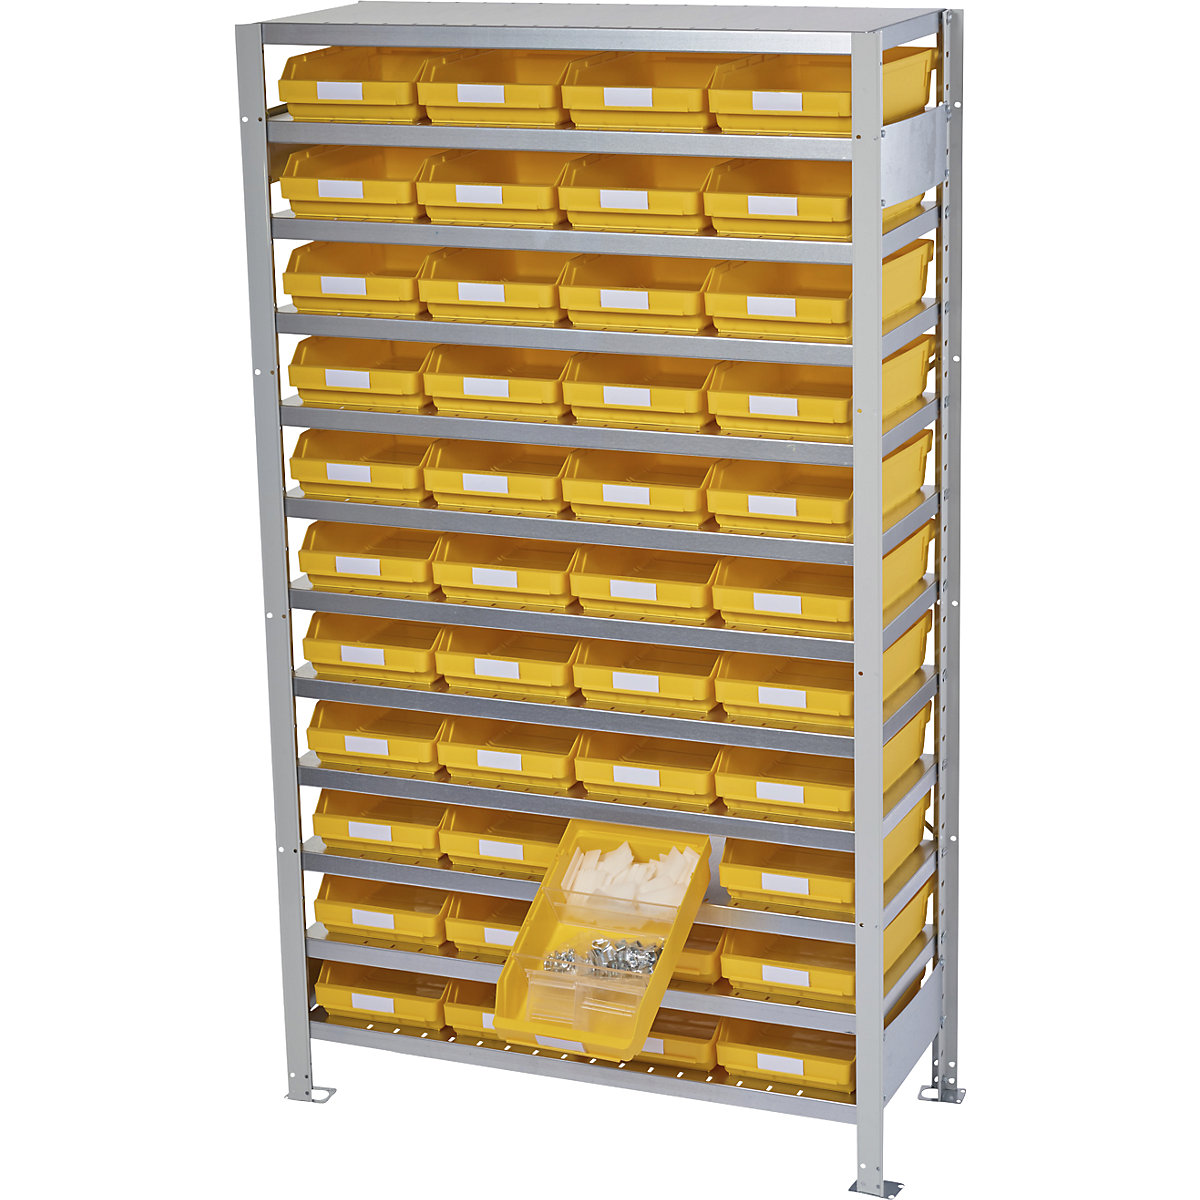 Zásuvný regál s regálovými přepravkami – STEMO, výška regálu 1790 mm, základní regál, hloubka 300 mm, 44 přepravek žlutých-29